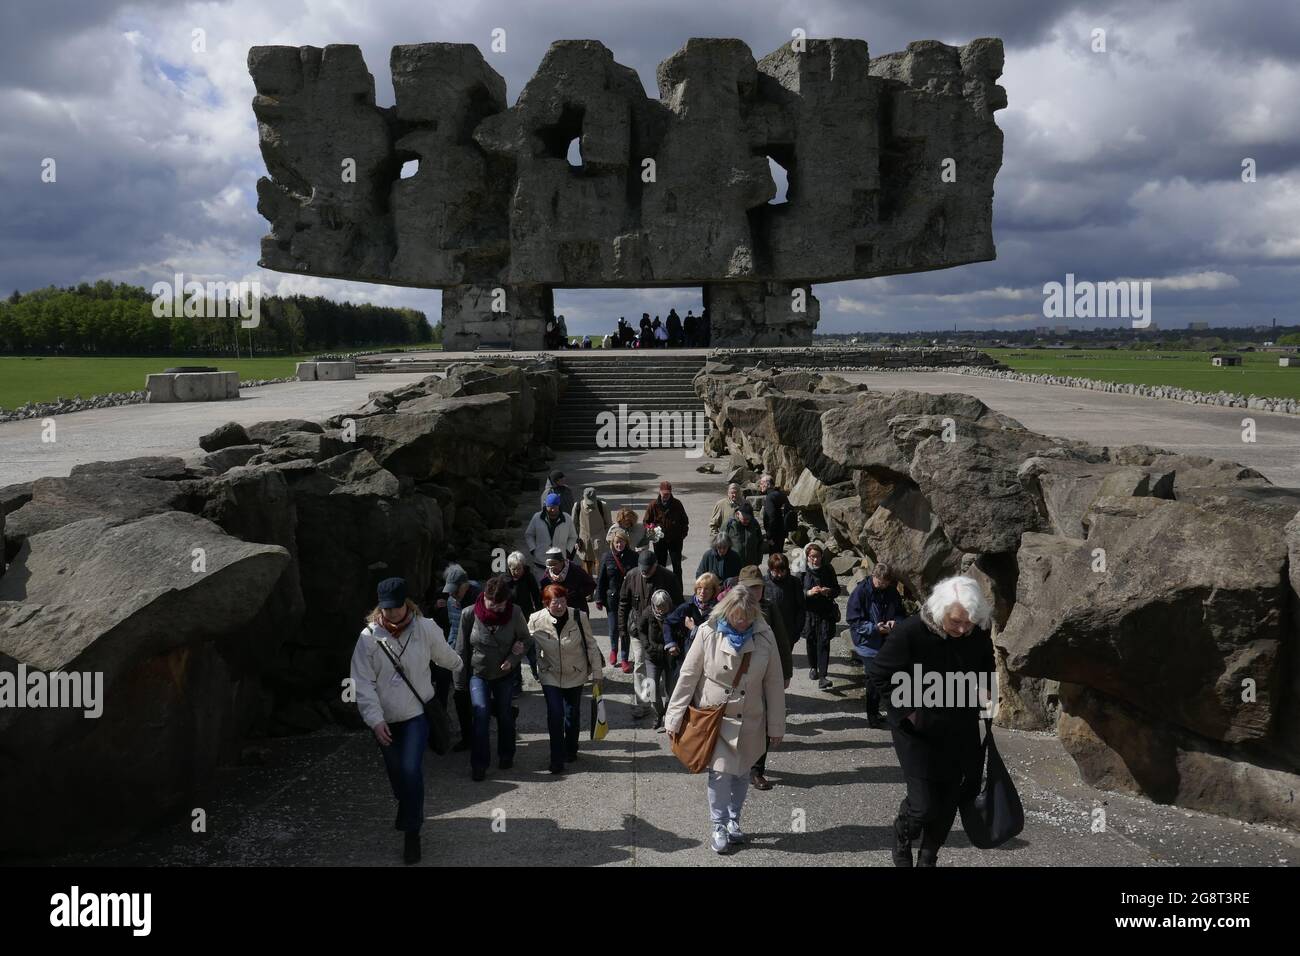 Lublino-Majdanek, Polen Foto Stock